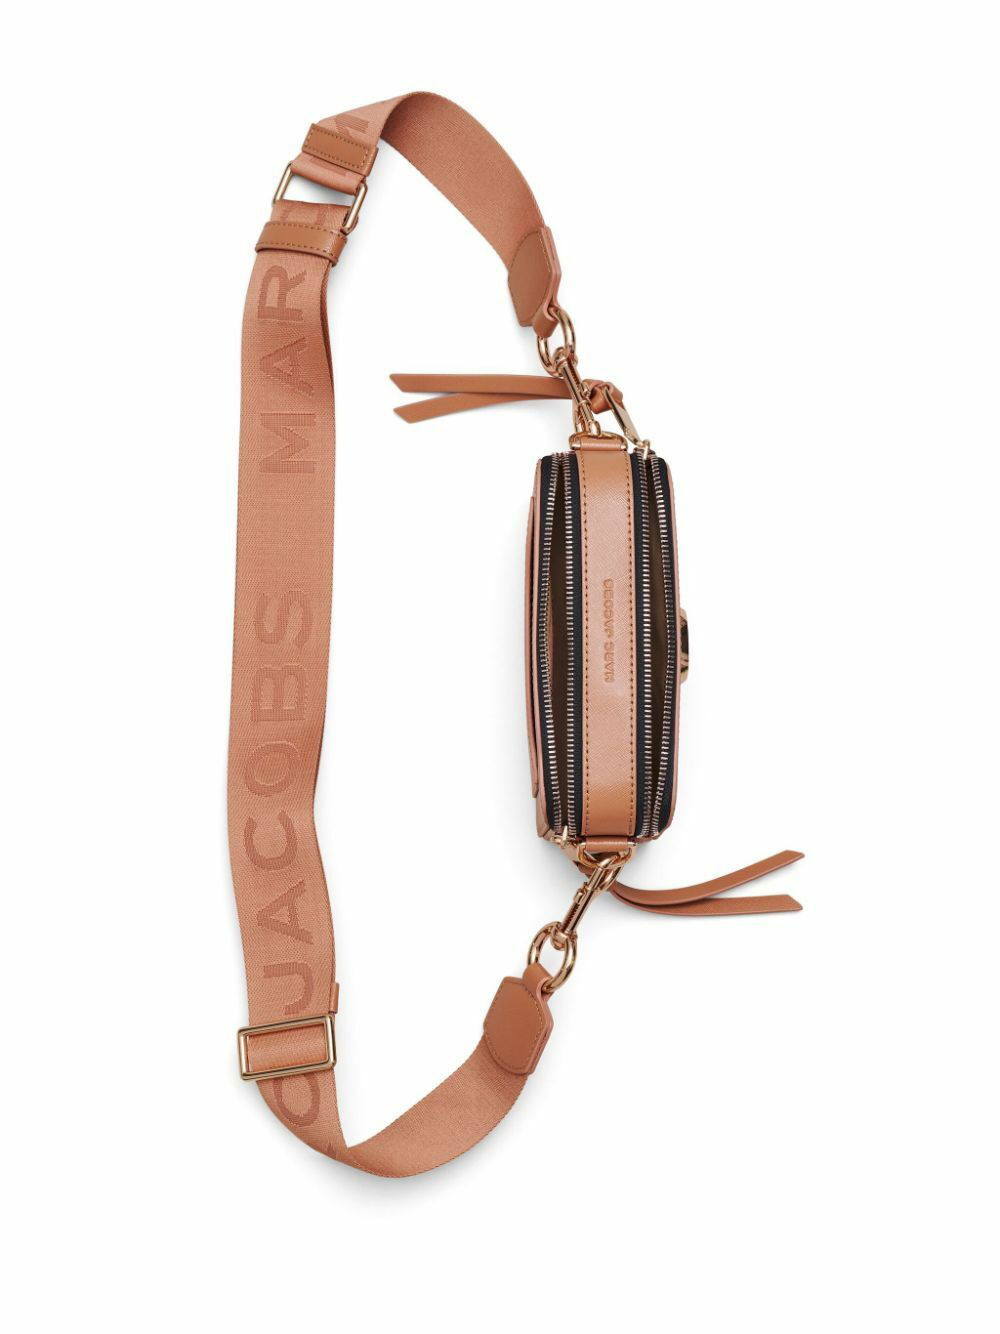 Marc Jacobs Pink 'The Snapshot' Shoulder Bag 259 Sunkissed